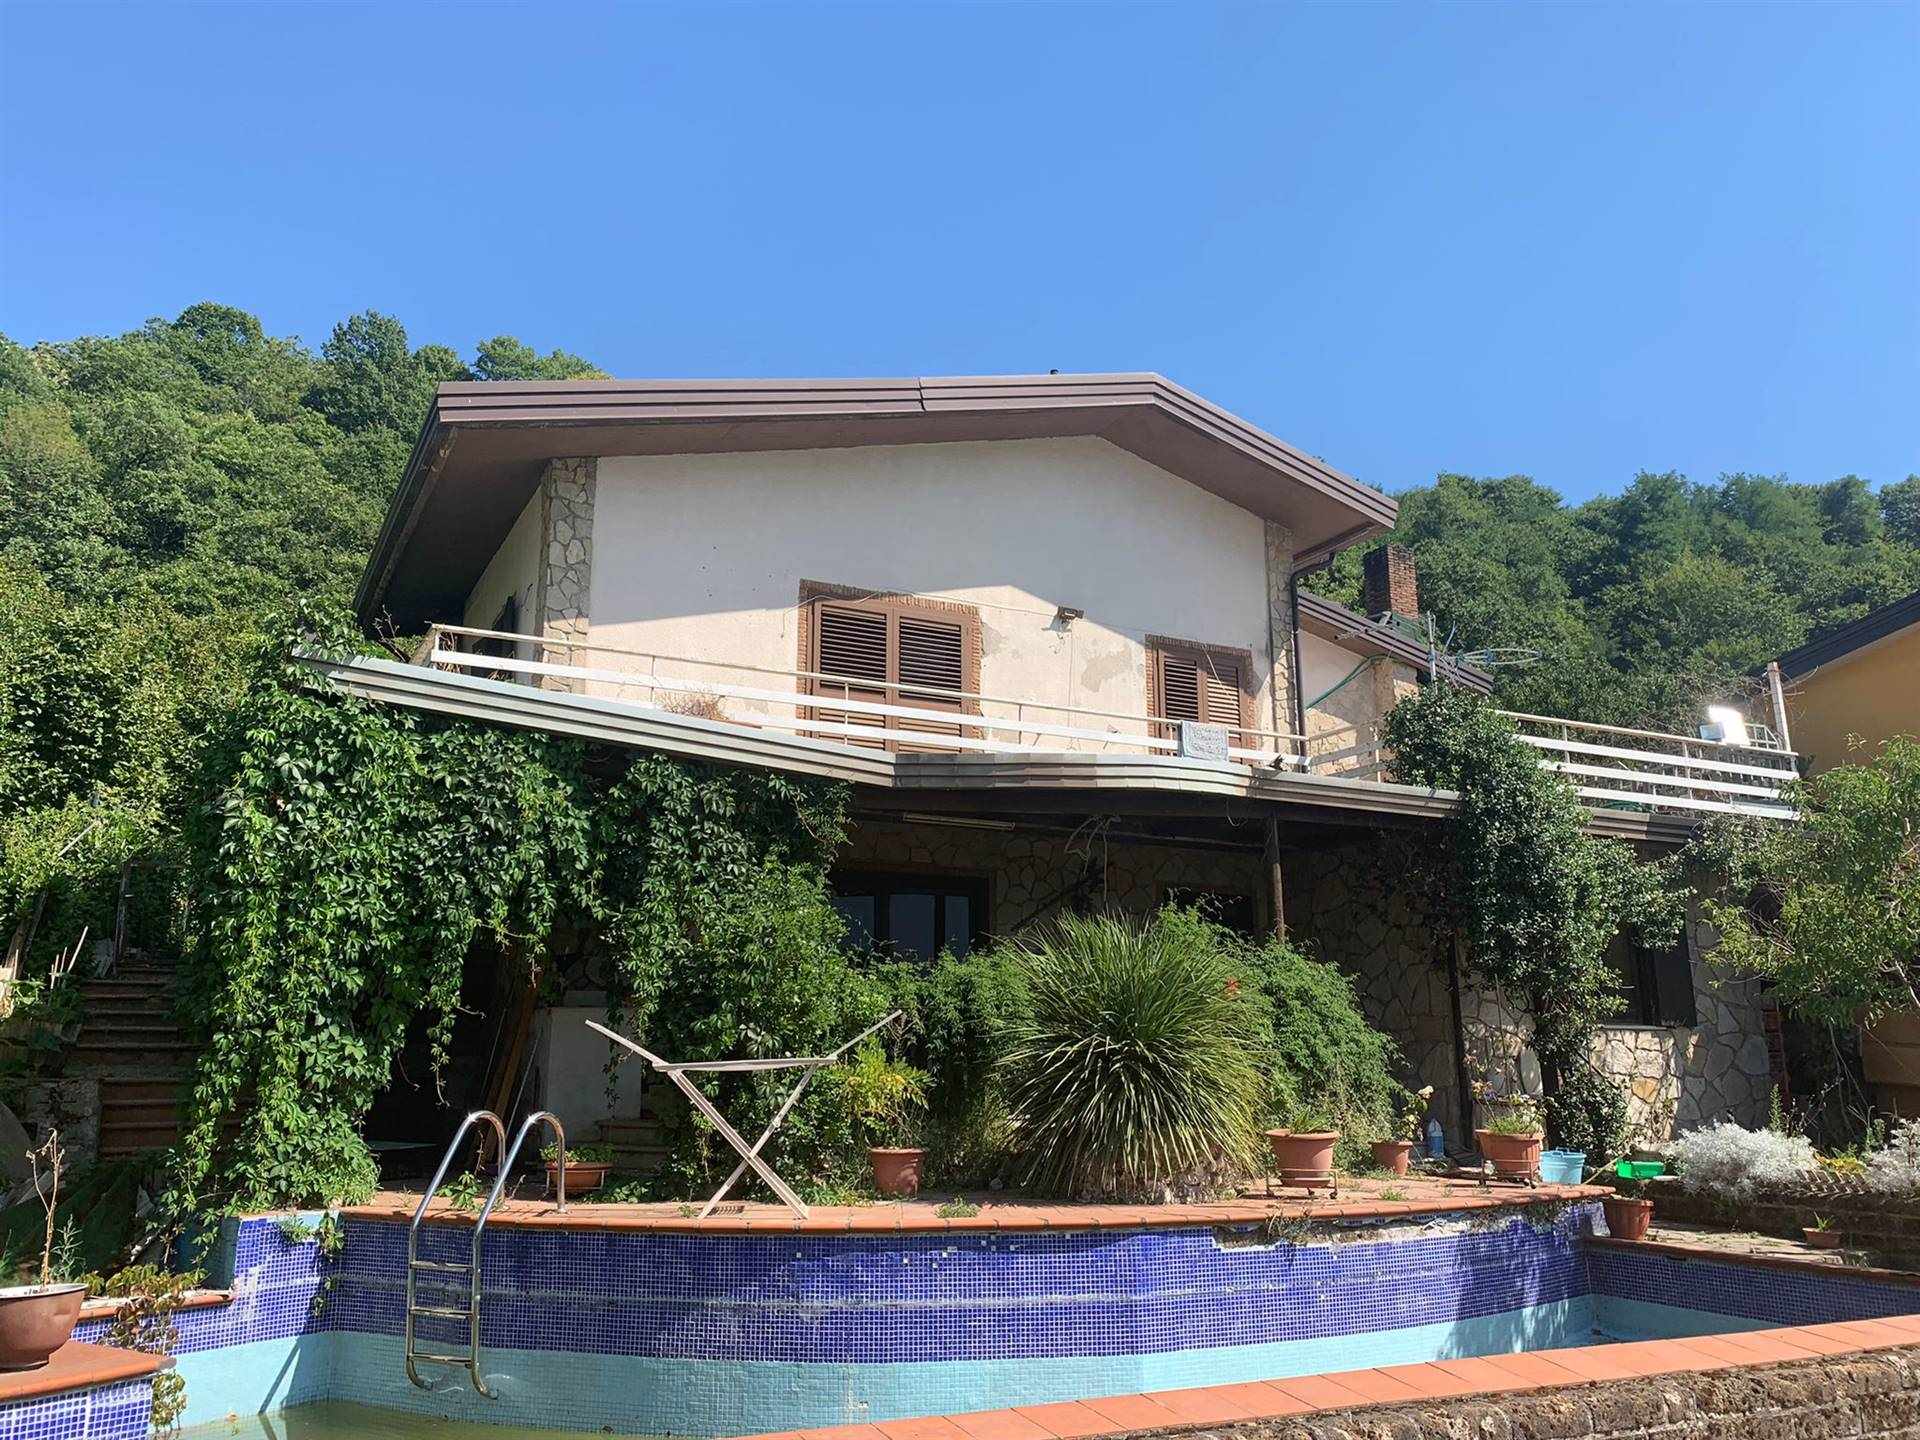 Villa in vendita a Grottolella, 6 locali, prezzo € 160.000 | PortaleAgenzieImmobiliari.it